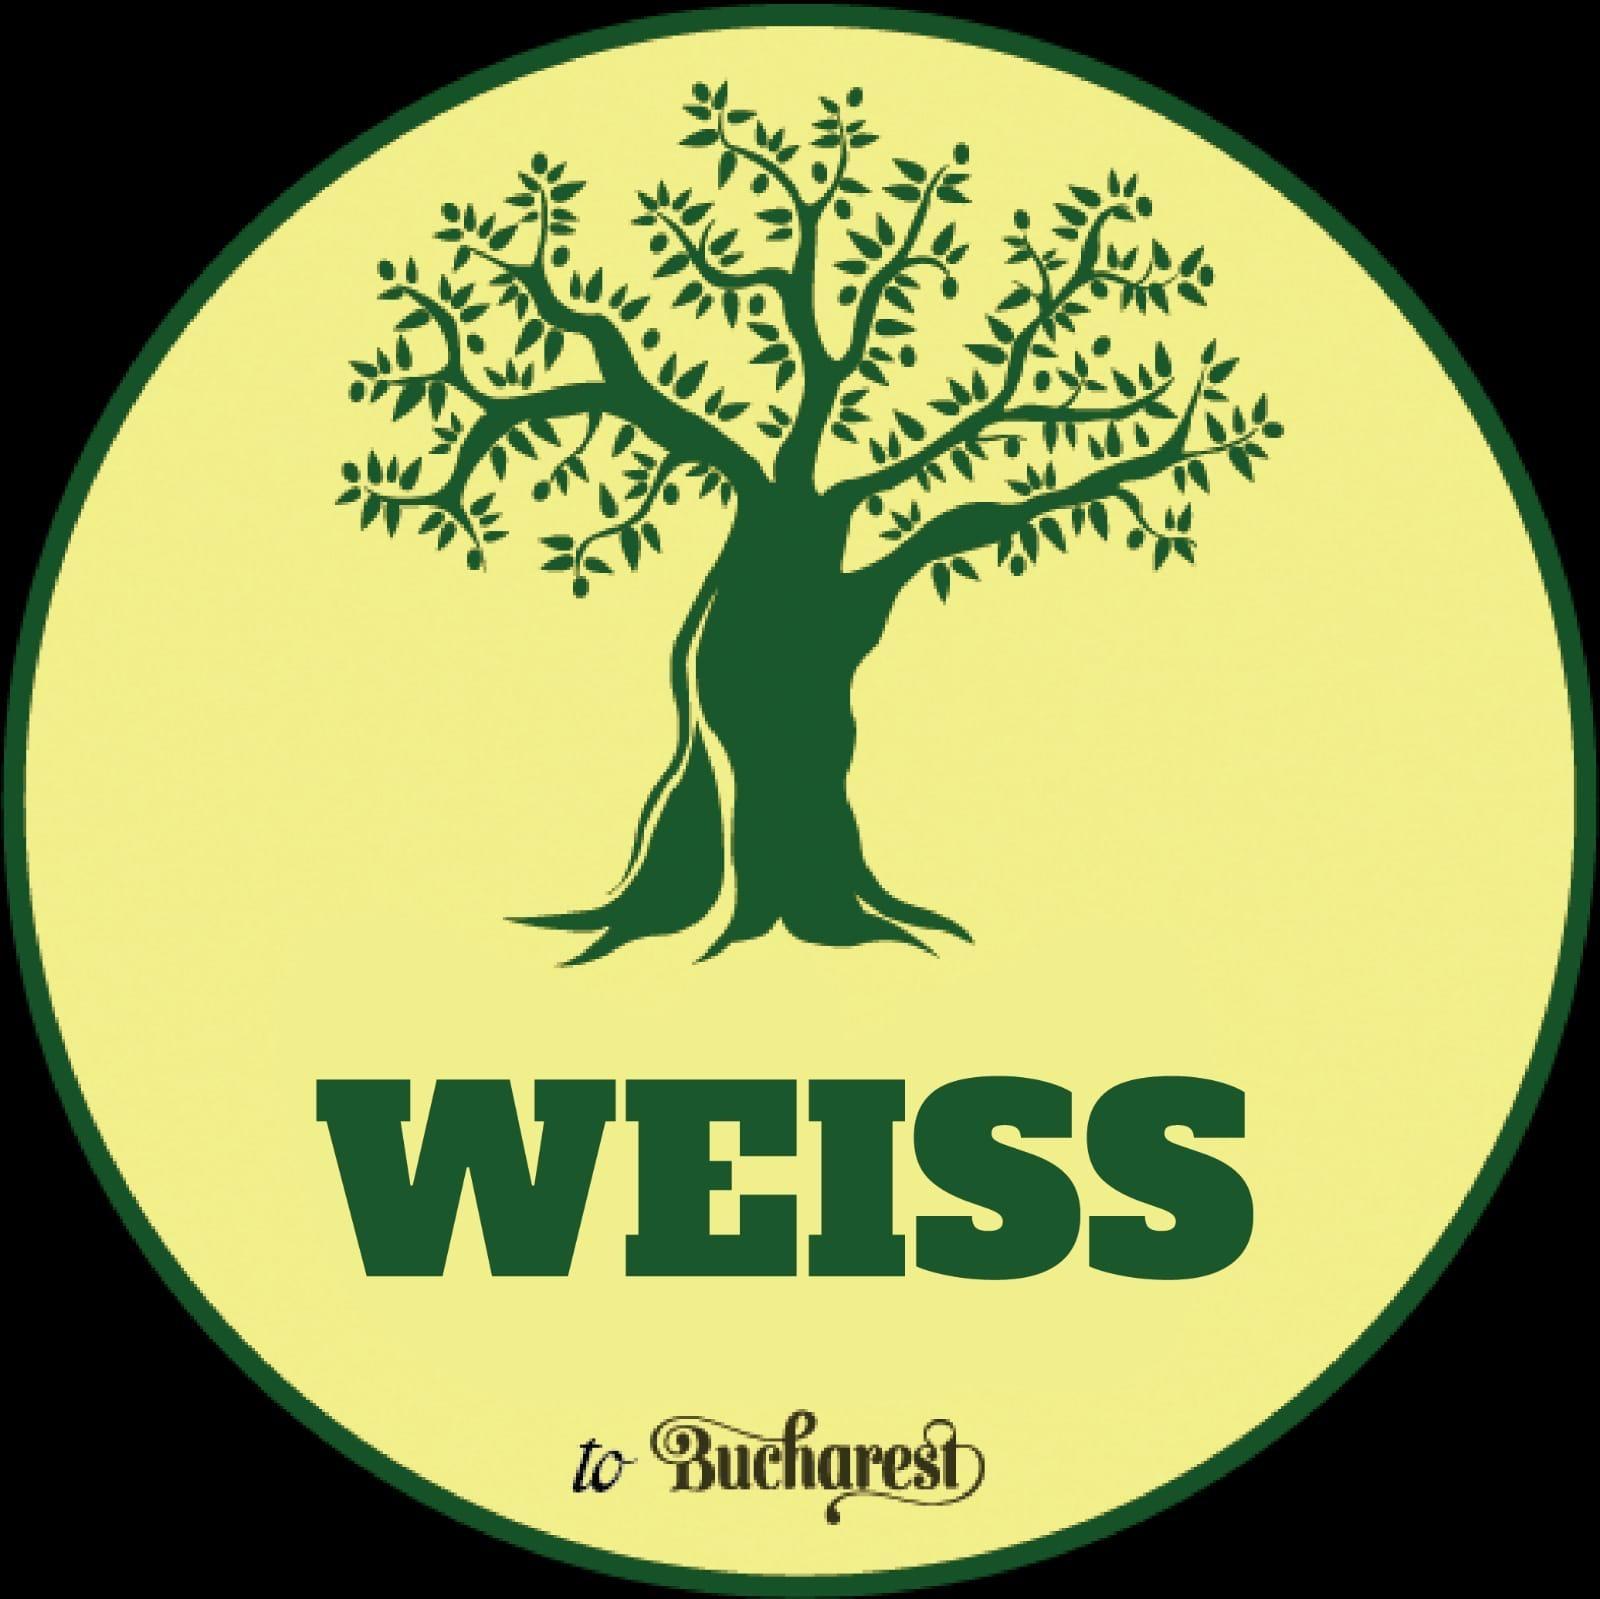 Weiss Beer Garden